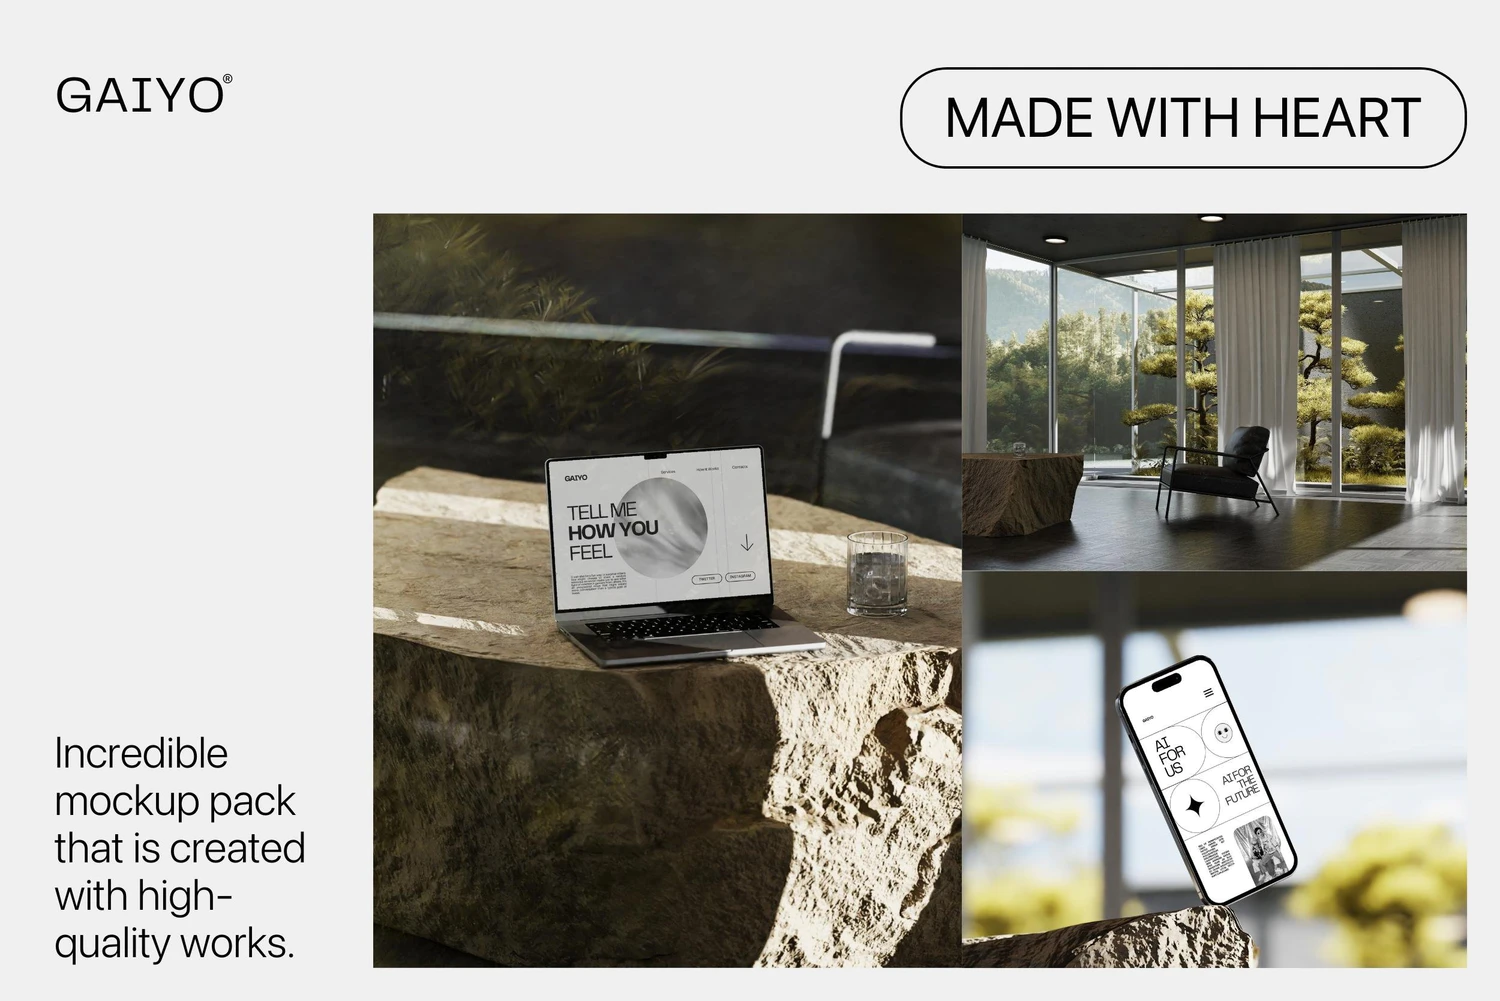 5111 时尚室内场景的苹果电子设备ui设计展示psd样机素材 Gaiyo – Industrial Mockup Bundle@GOOODME.COM